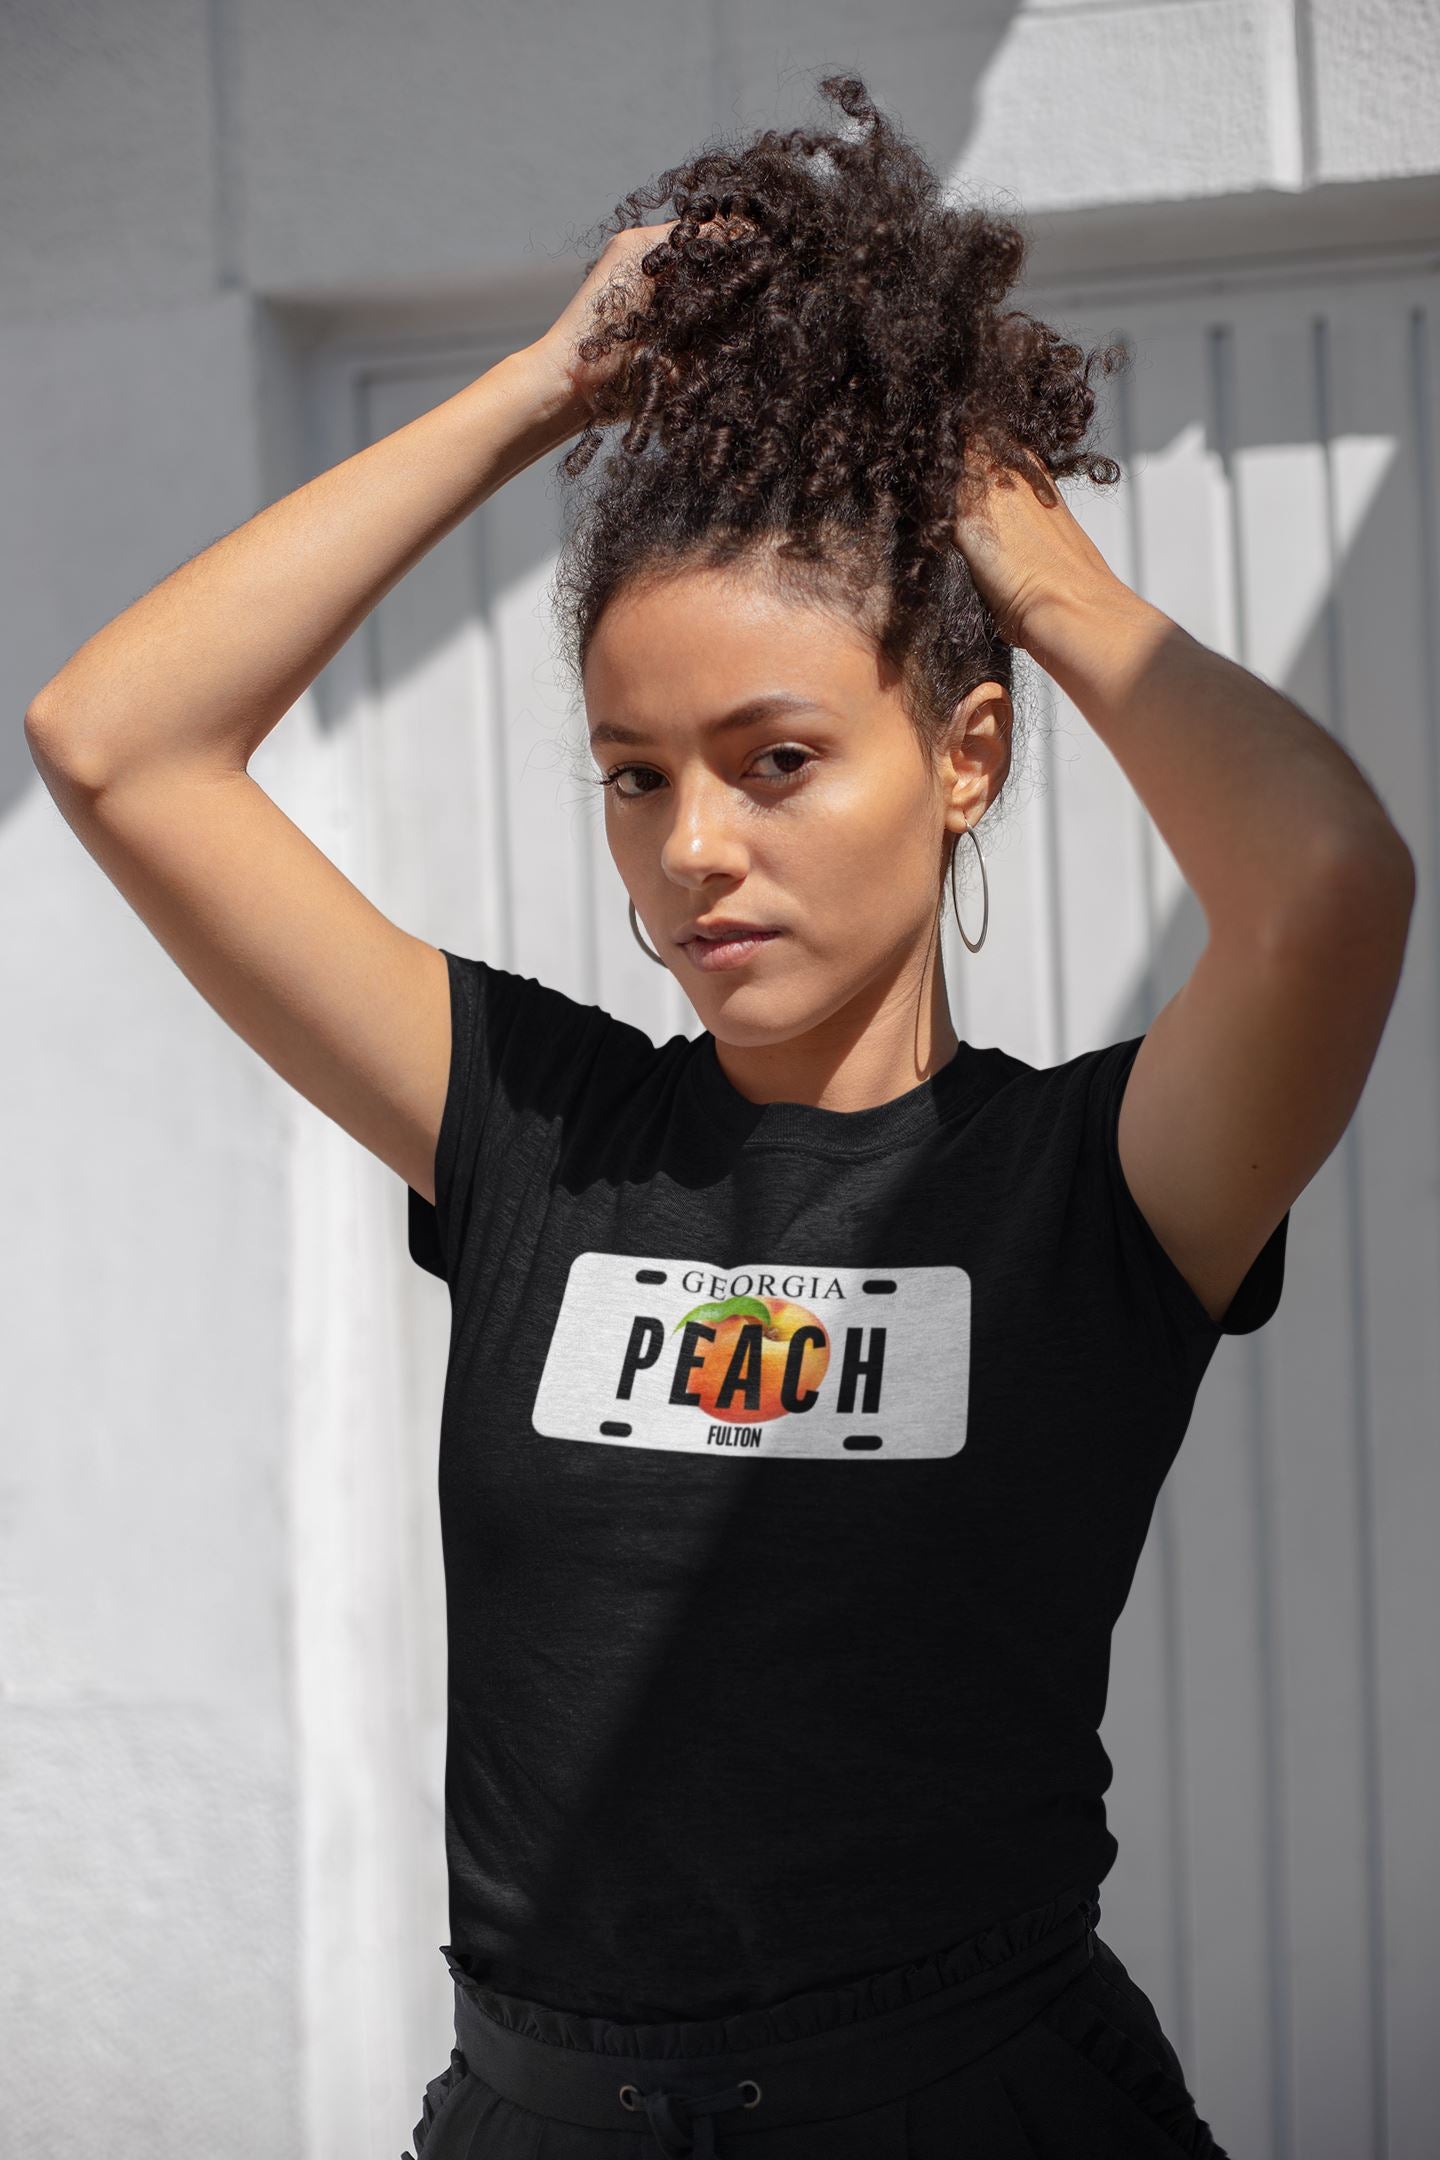 Georgia Peach T-Shirt, Georgia Girl, License Plate Themed Shirt B1ack By Design LLC 